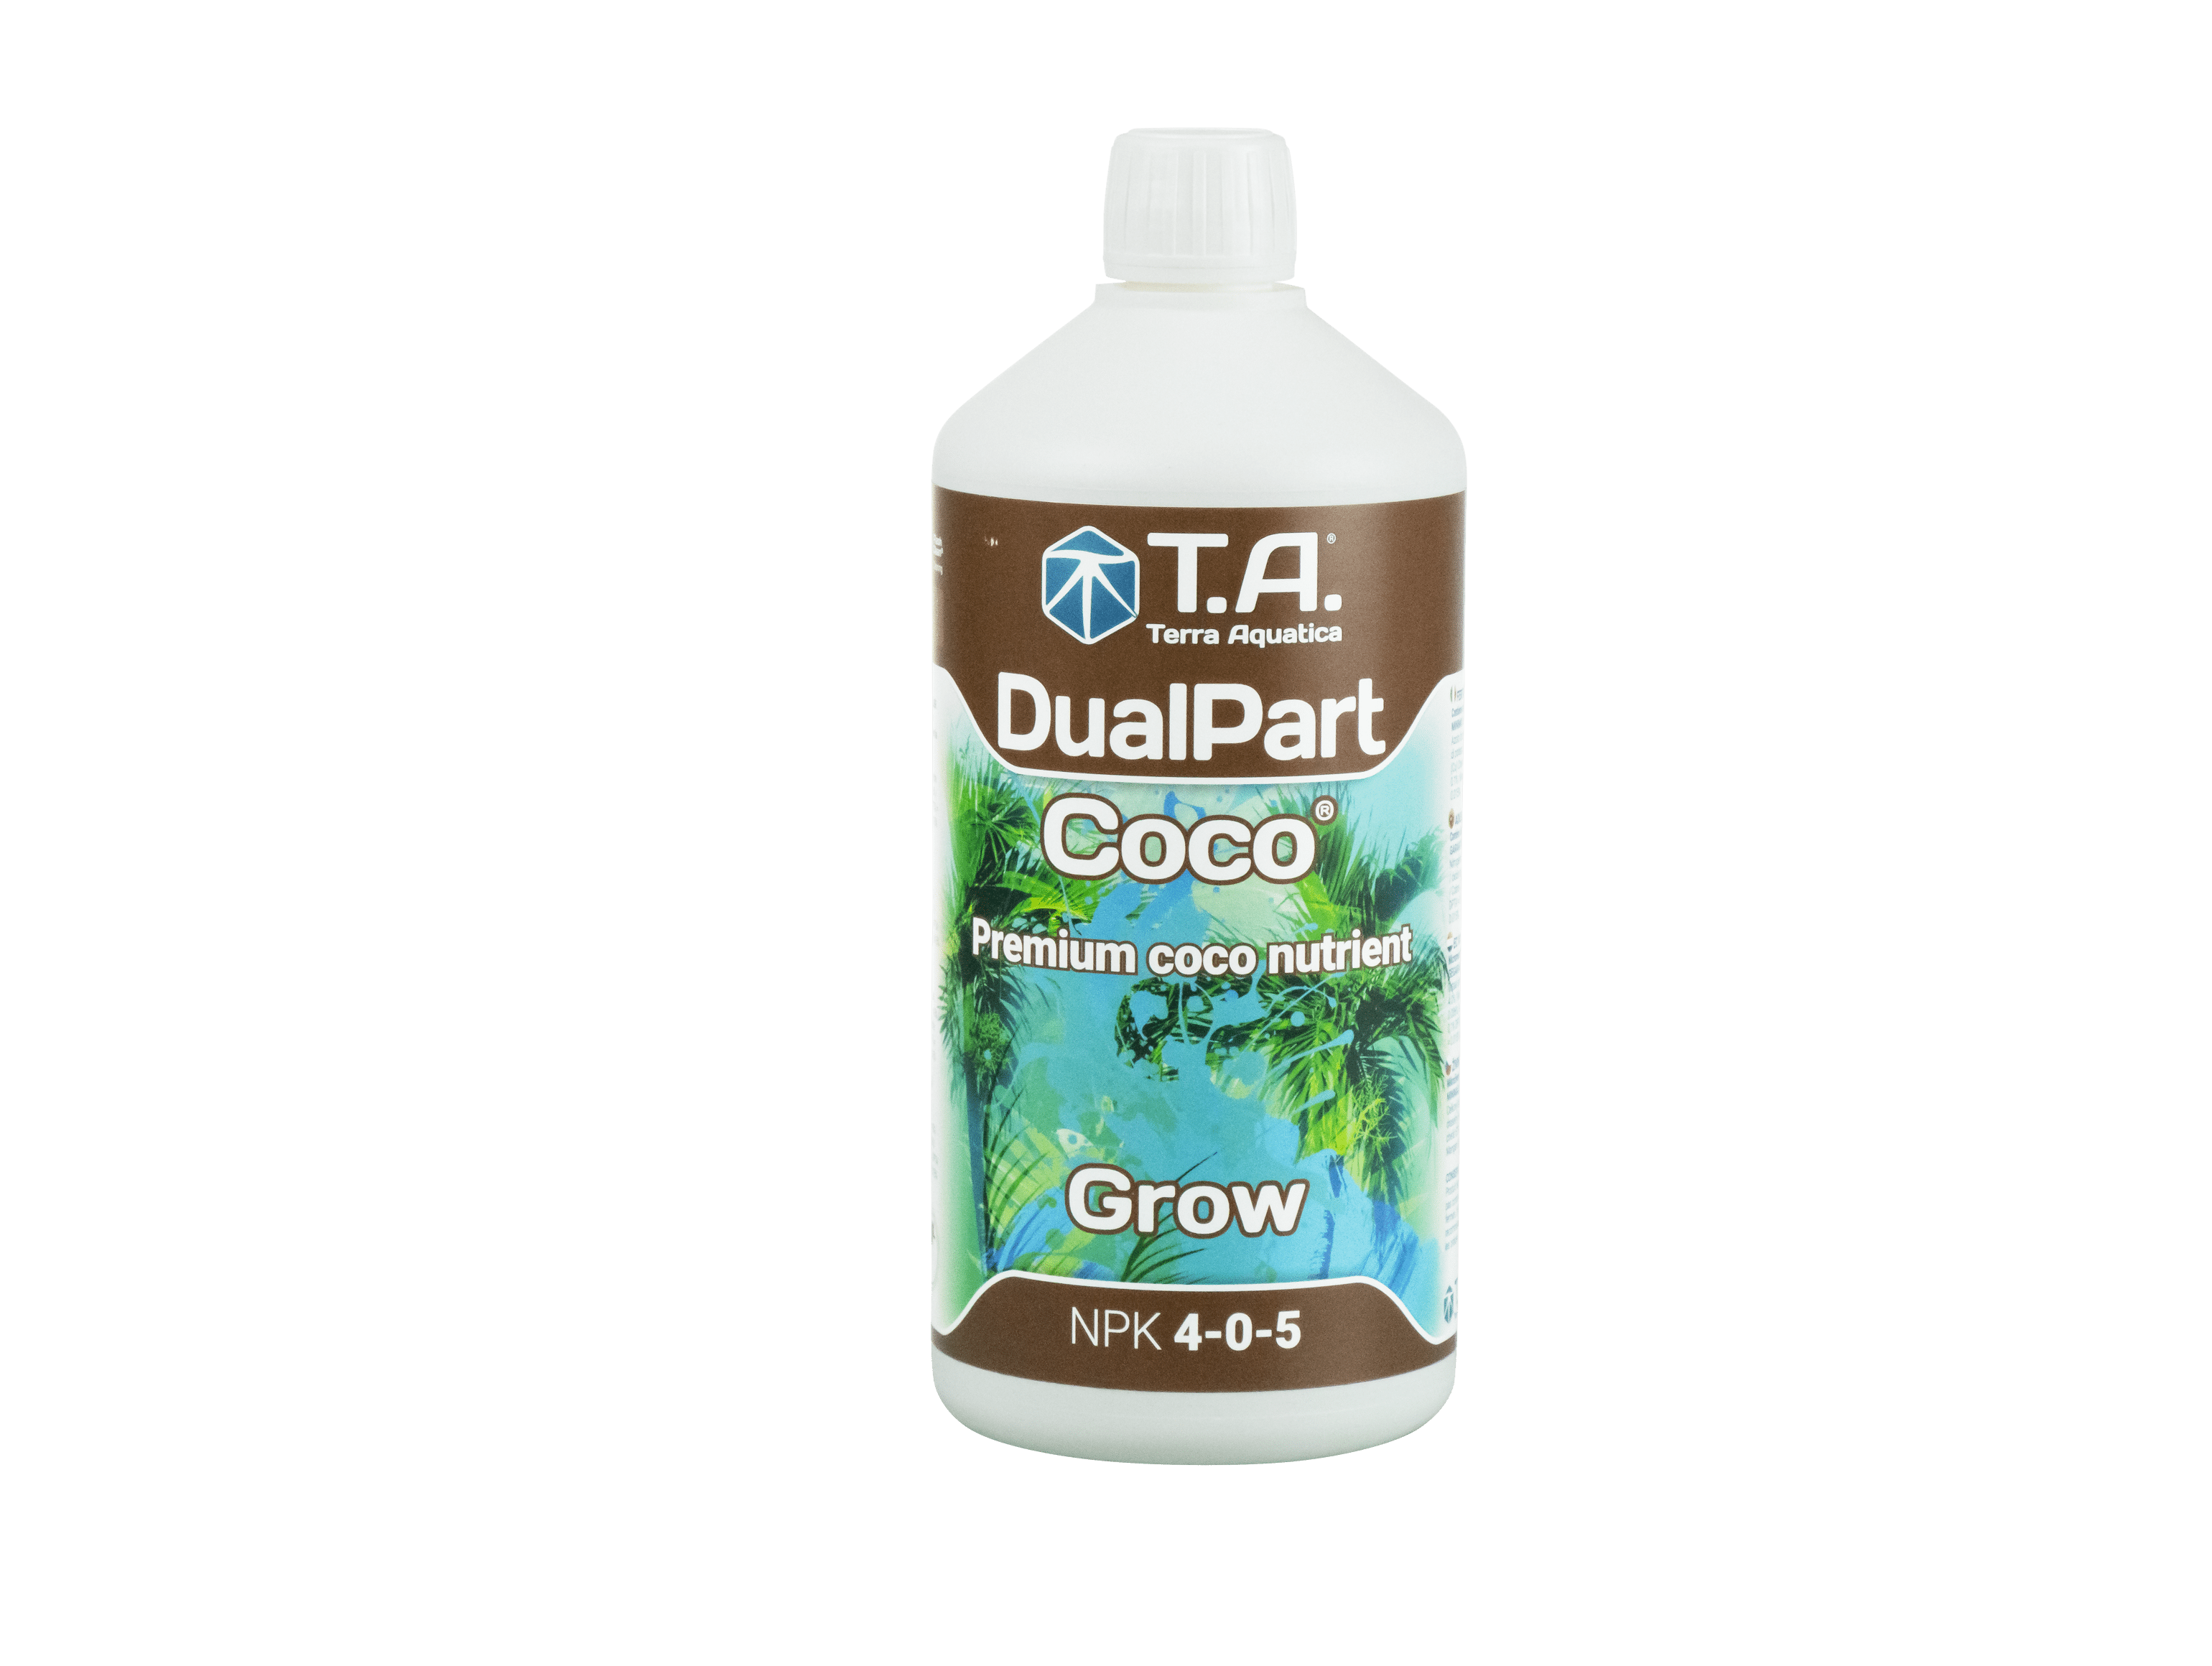 Nutrients 1L Terra Aquatica DualPart Coco Grow